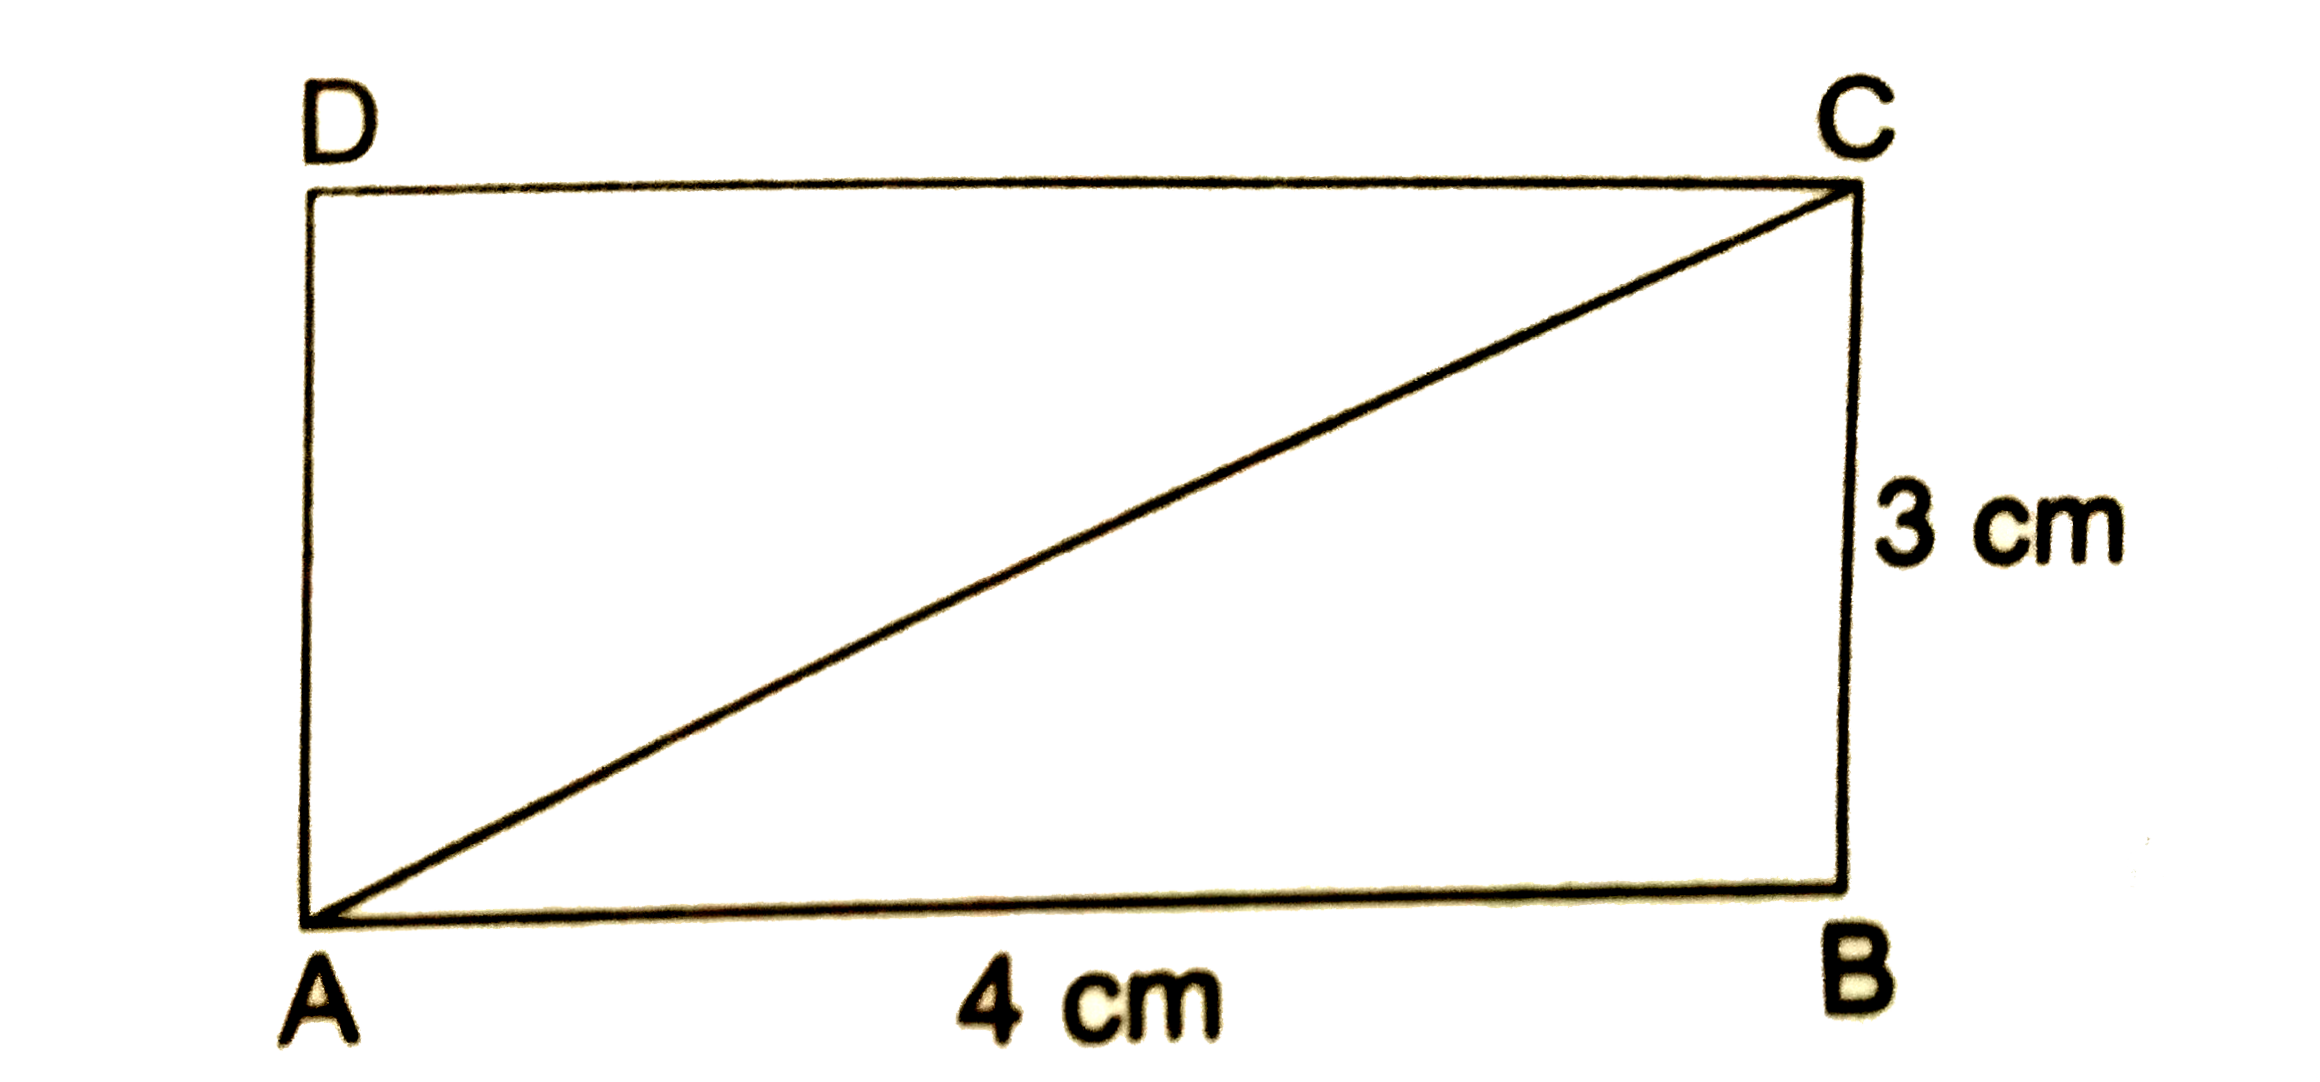 ABCD एक आयत है जिसकी भुजाएँ 4 cm तथा 3 cm है.      वेक्टर vec(AB) का AC की ओर घटक निकले.